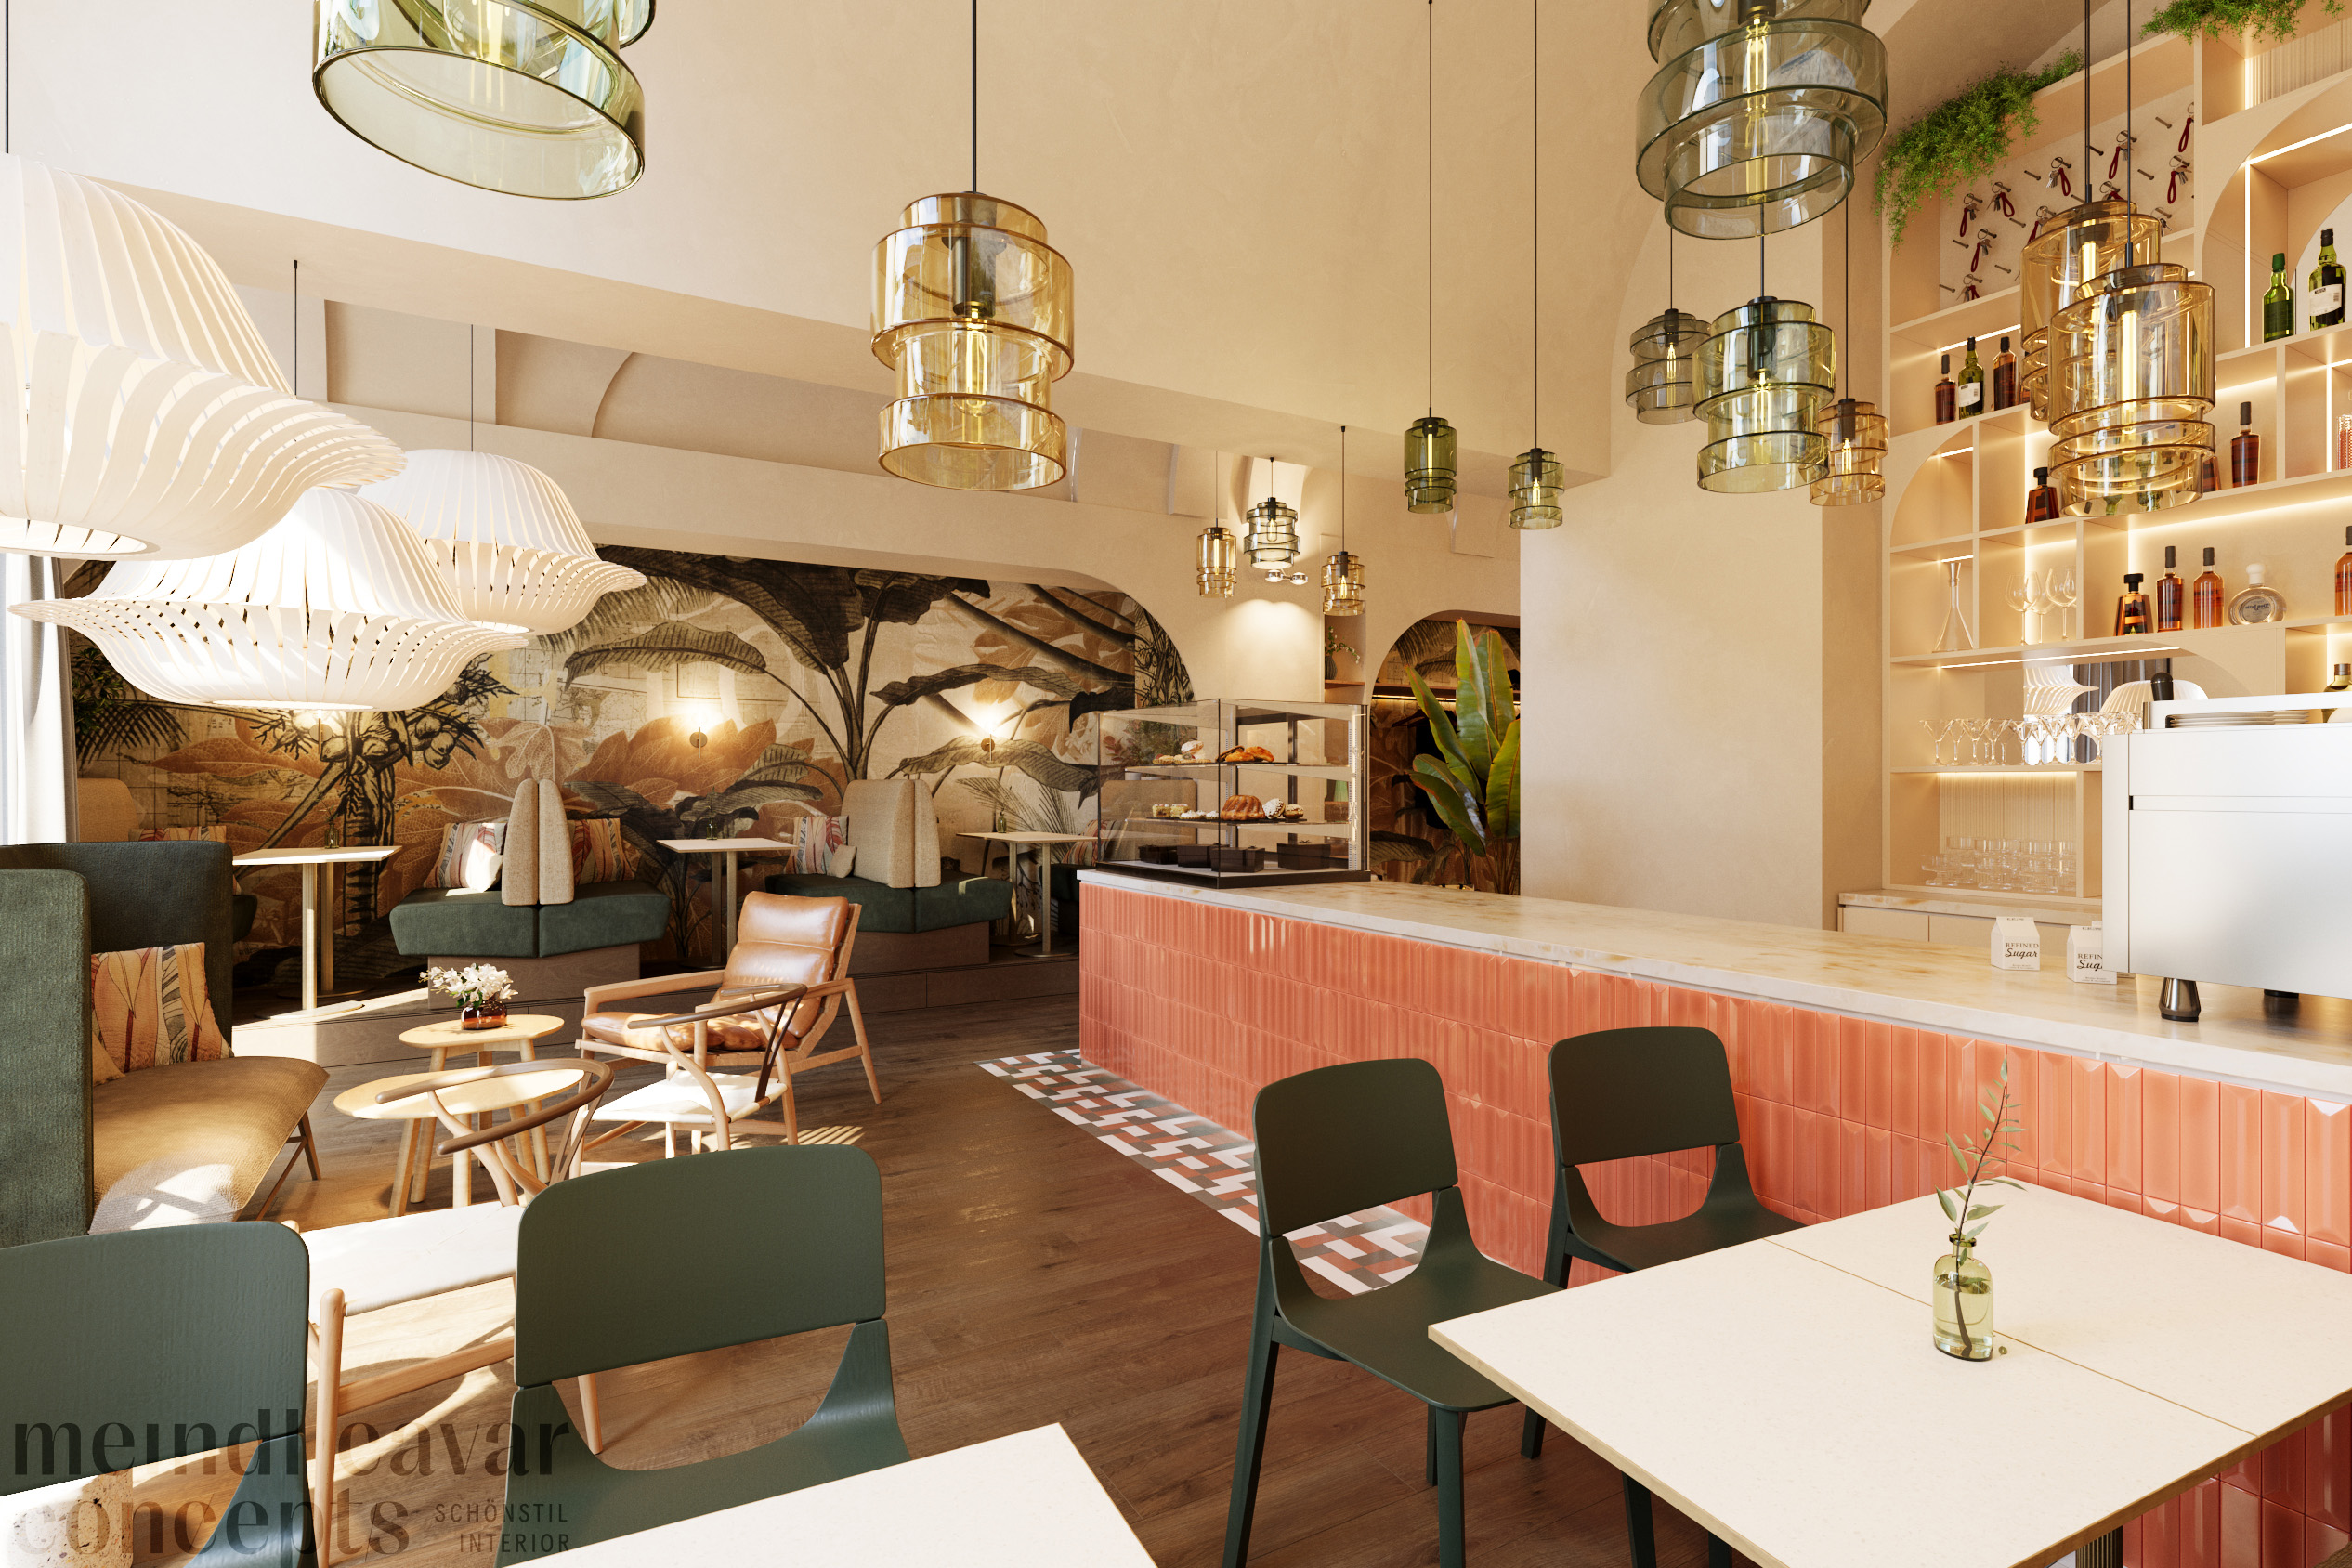 Bistro & Rezeption für Boutique Hotel in Wien von Meindl Cavar Concepts